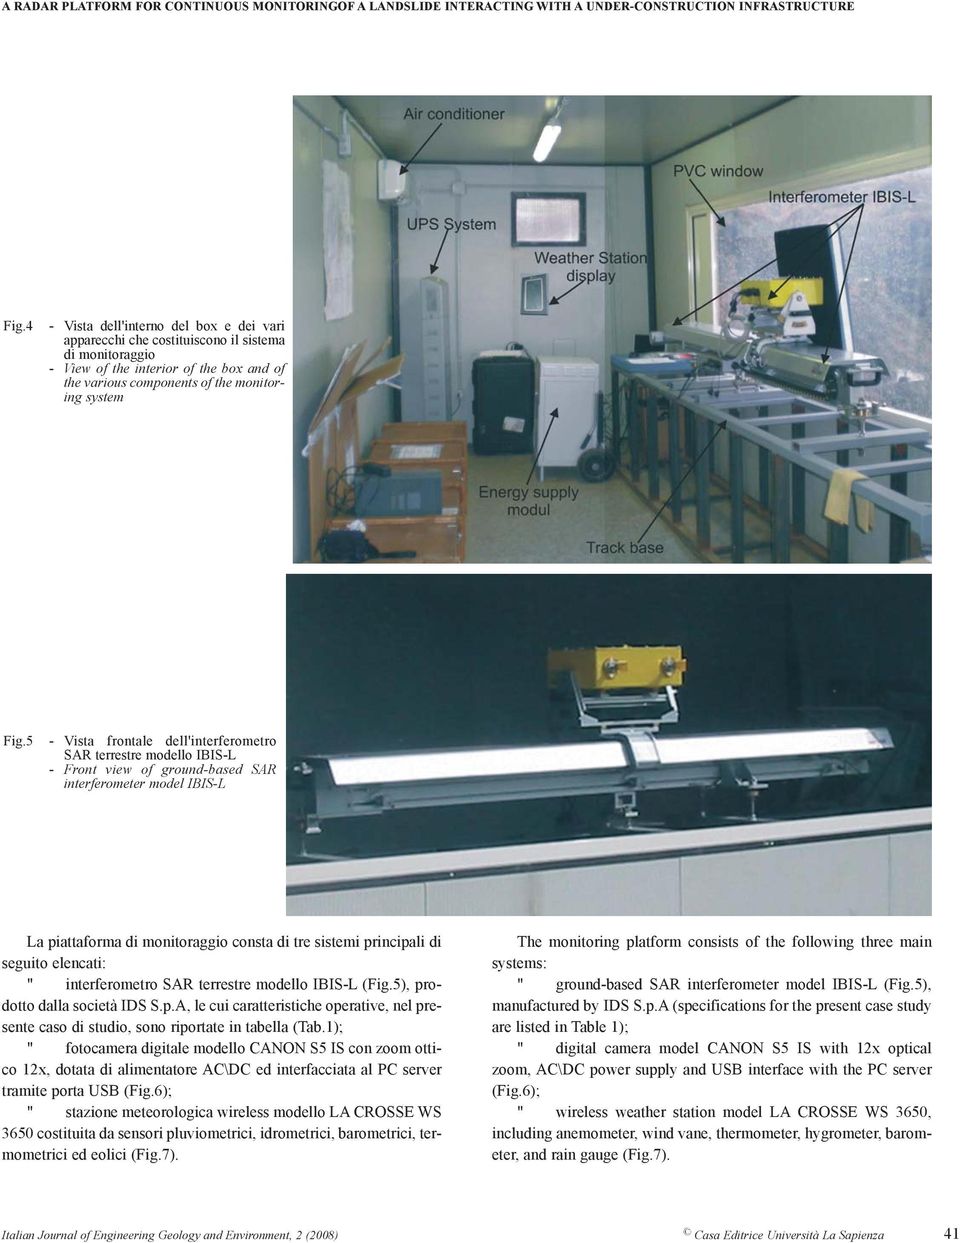 5 - Vista frontale dell'interferometro SAR terrestre modello IBIS-L - Front view of ground-based SAR interferometer model IBIS-L La piattaforma di monitoraggio consta di tre sistemi principali di